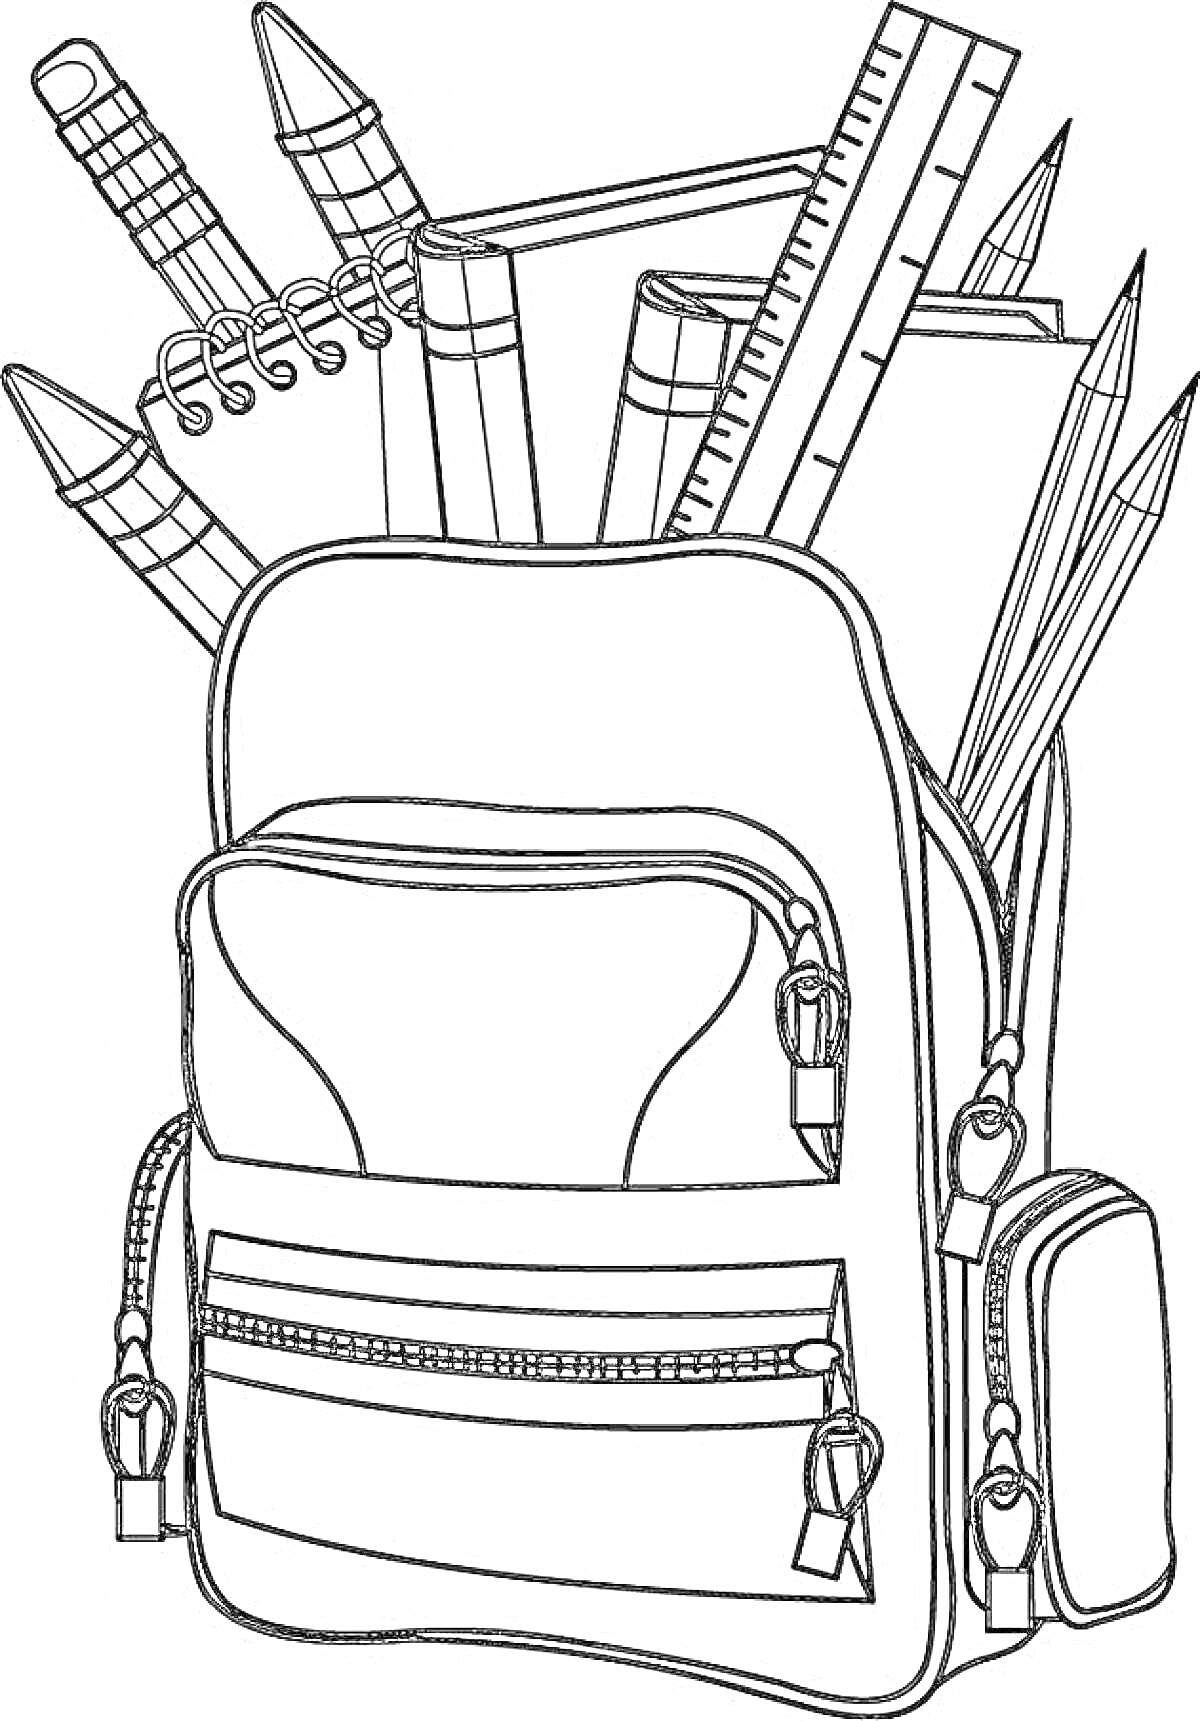 Раскраска Раскраска школьного рюкзака с карандашами, линейками и блокнотом